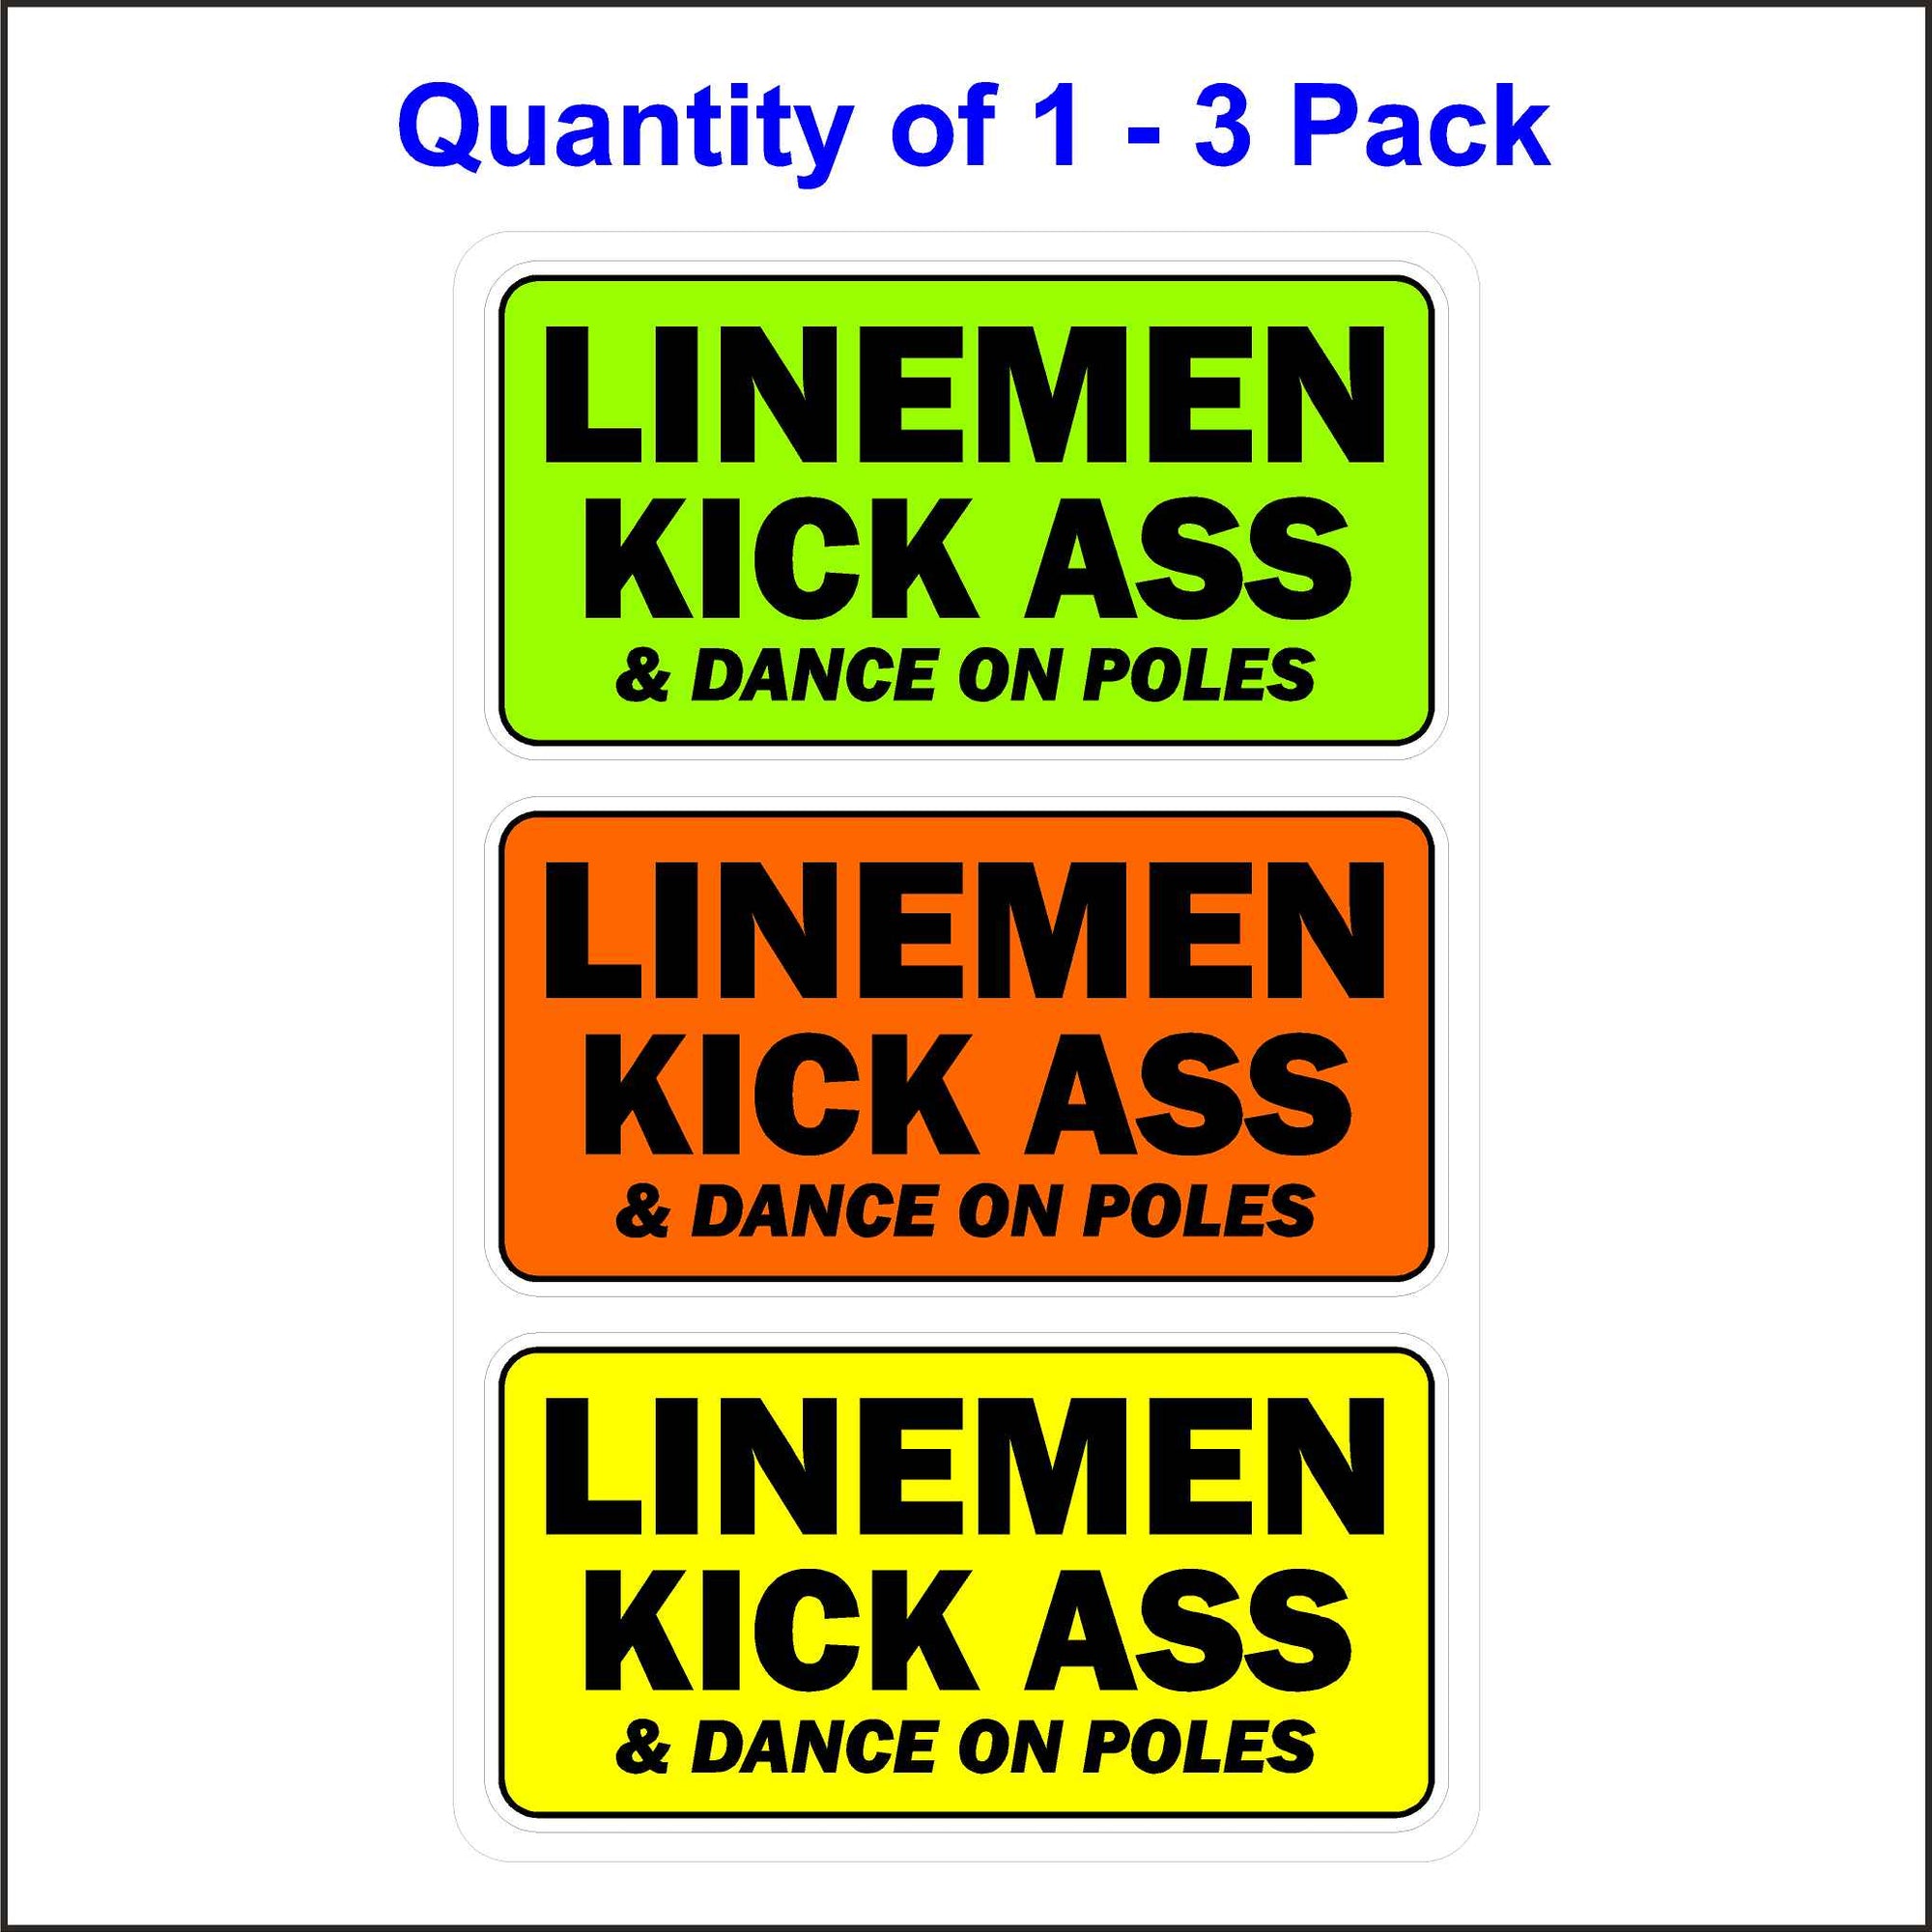 Lineman Kick Ass and Dance on Poles Sticker.Lineman Kick Ass and Dance on Poles Sticker 3 Pack.